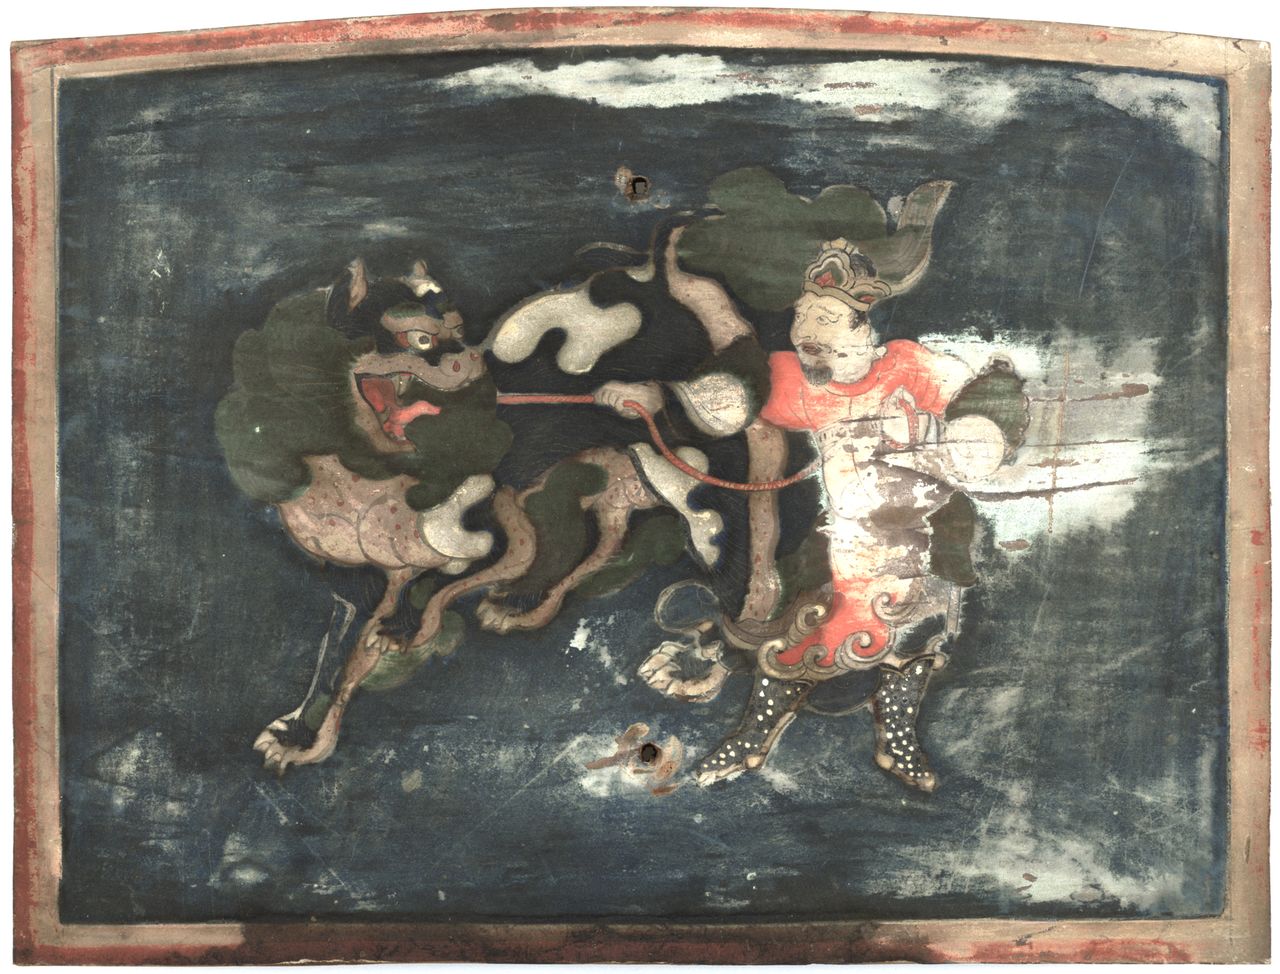 صورة لأودينّو (أوديانا) مع أسد تعود لعام 1554 تقريبا (الصورة بإذن من متحف طوكيو القومي).